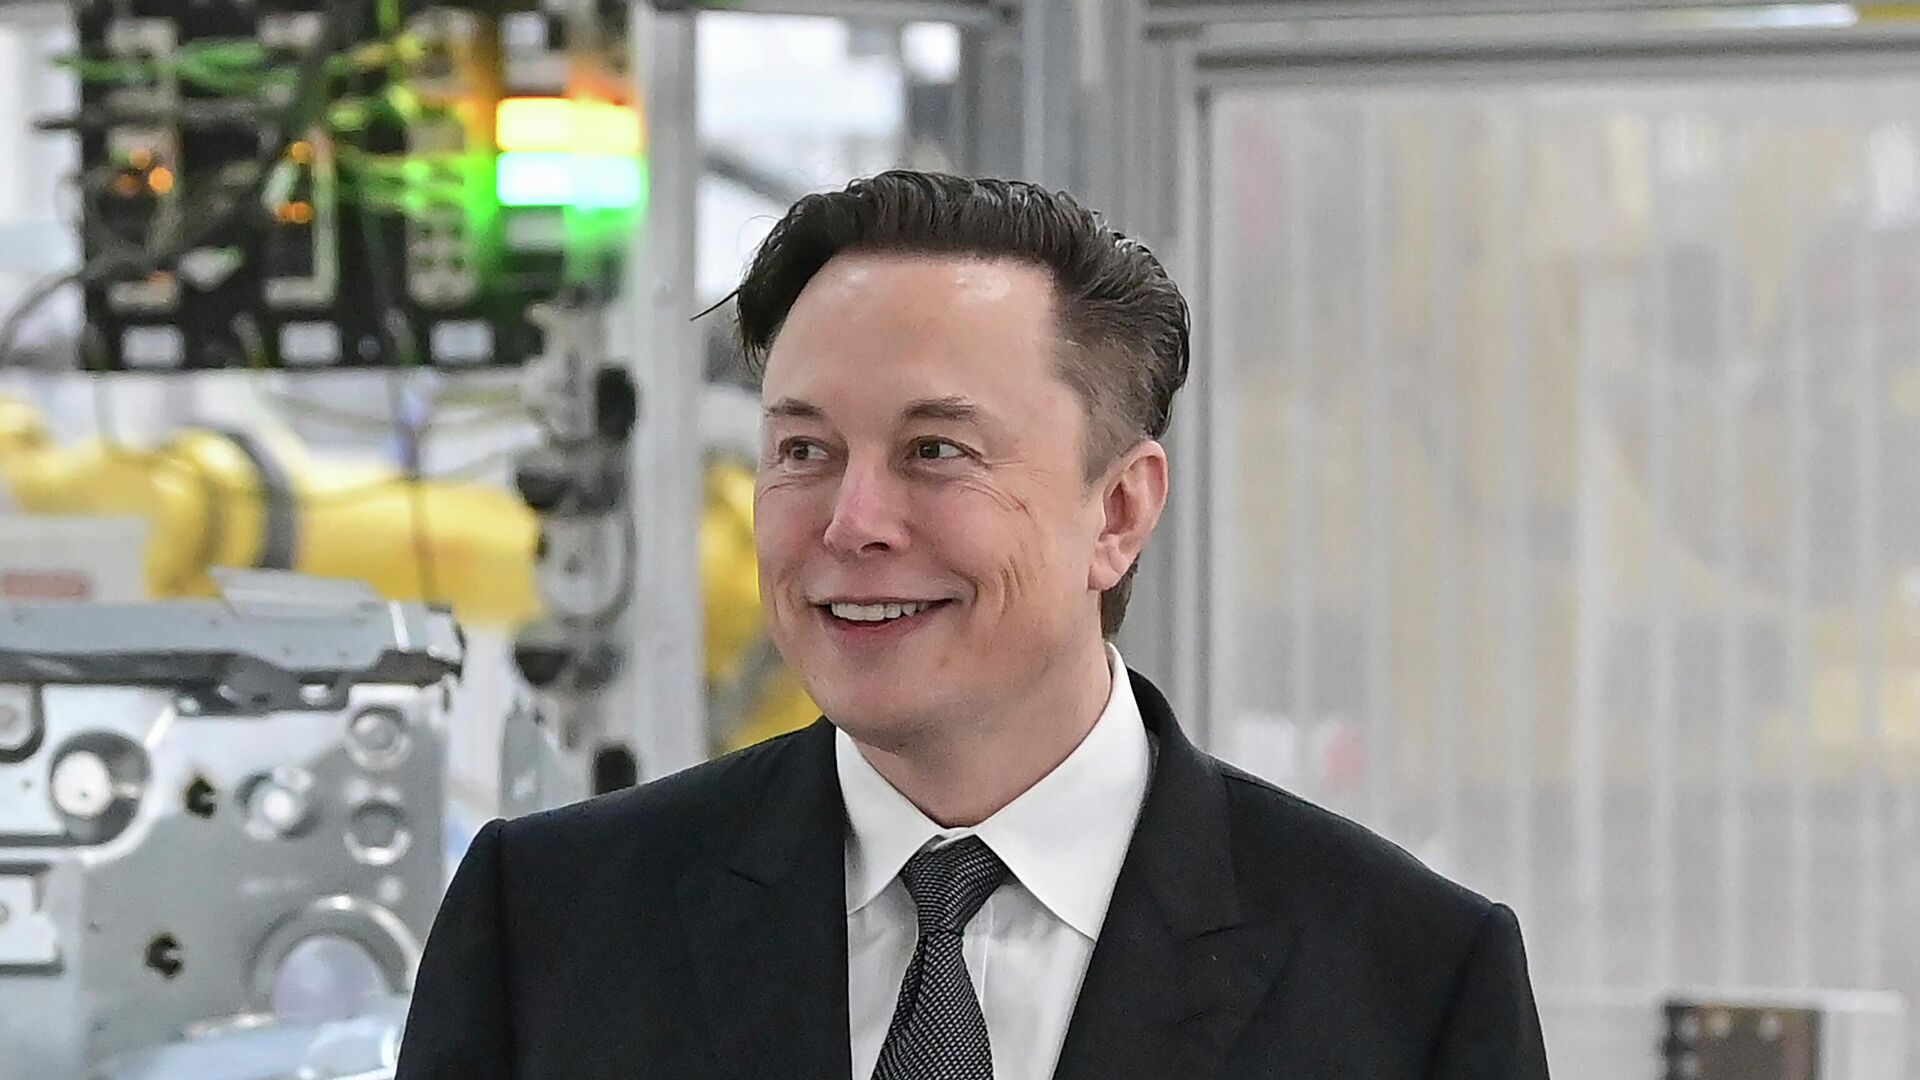  Tesla CEO Elon Musk attends the opening of the Tesla factory Berlin Brandenburg in Gruenheide, Germany on March 22, 2022. - Sputnik International, 1920, 21.06.2022